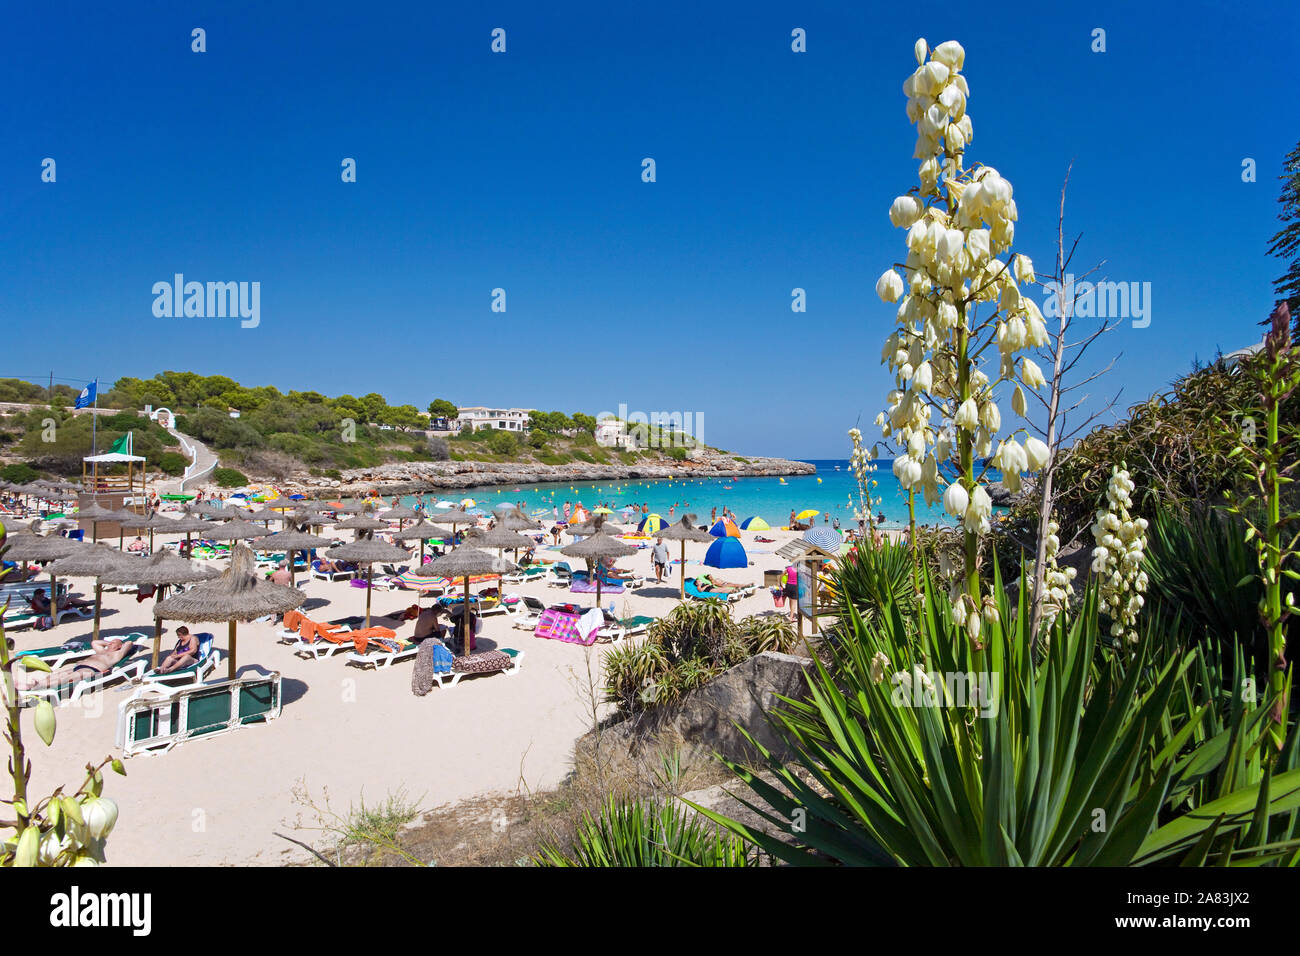 Blooming Moundlily Yuca (Yucca gloriosa) en playa Cala Marcal, Porto Colom, Mallorca, Islas Baleares, España Foto de stock